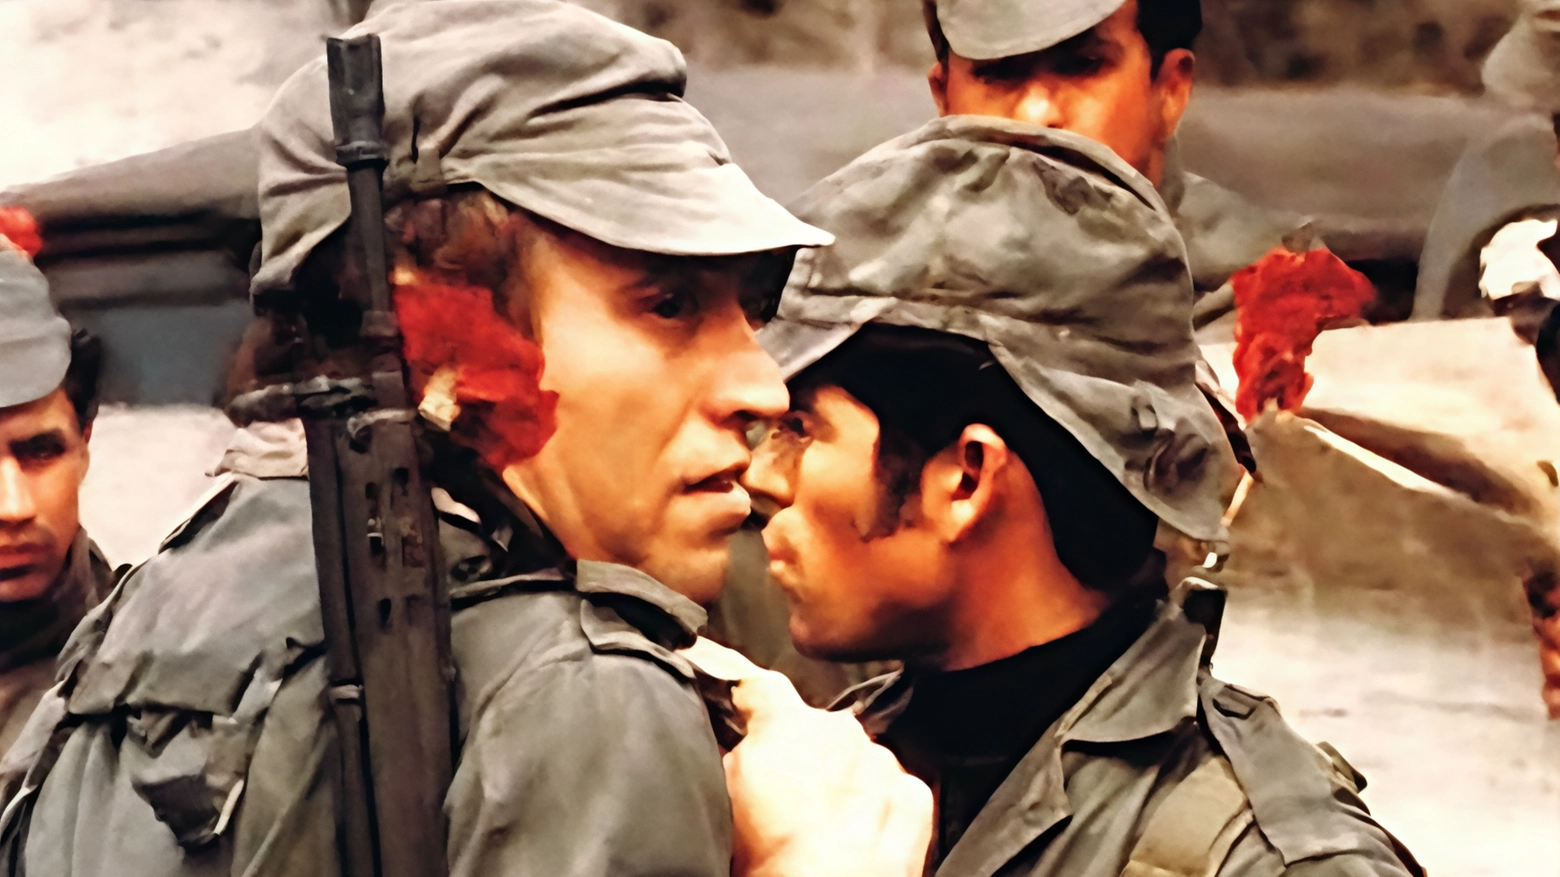 25 aprile 1974: la Rivoluzione dei garofani, “Revolução dos cravos“